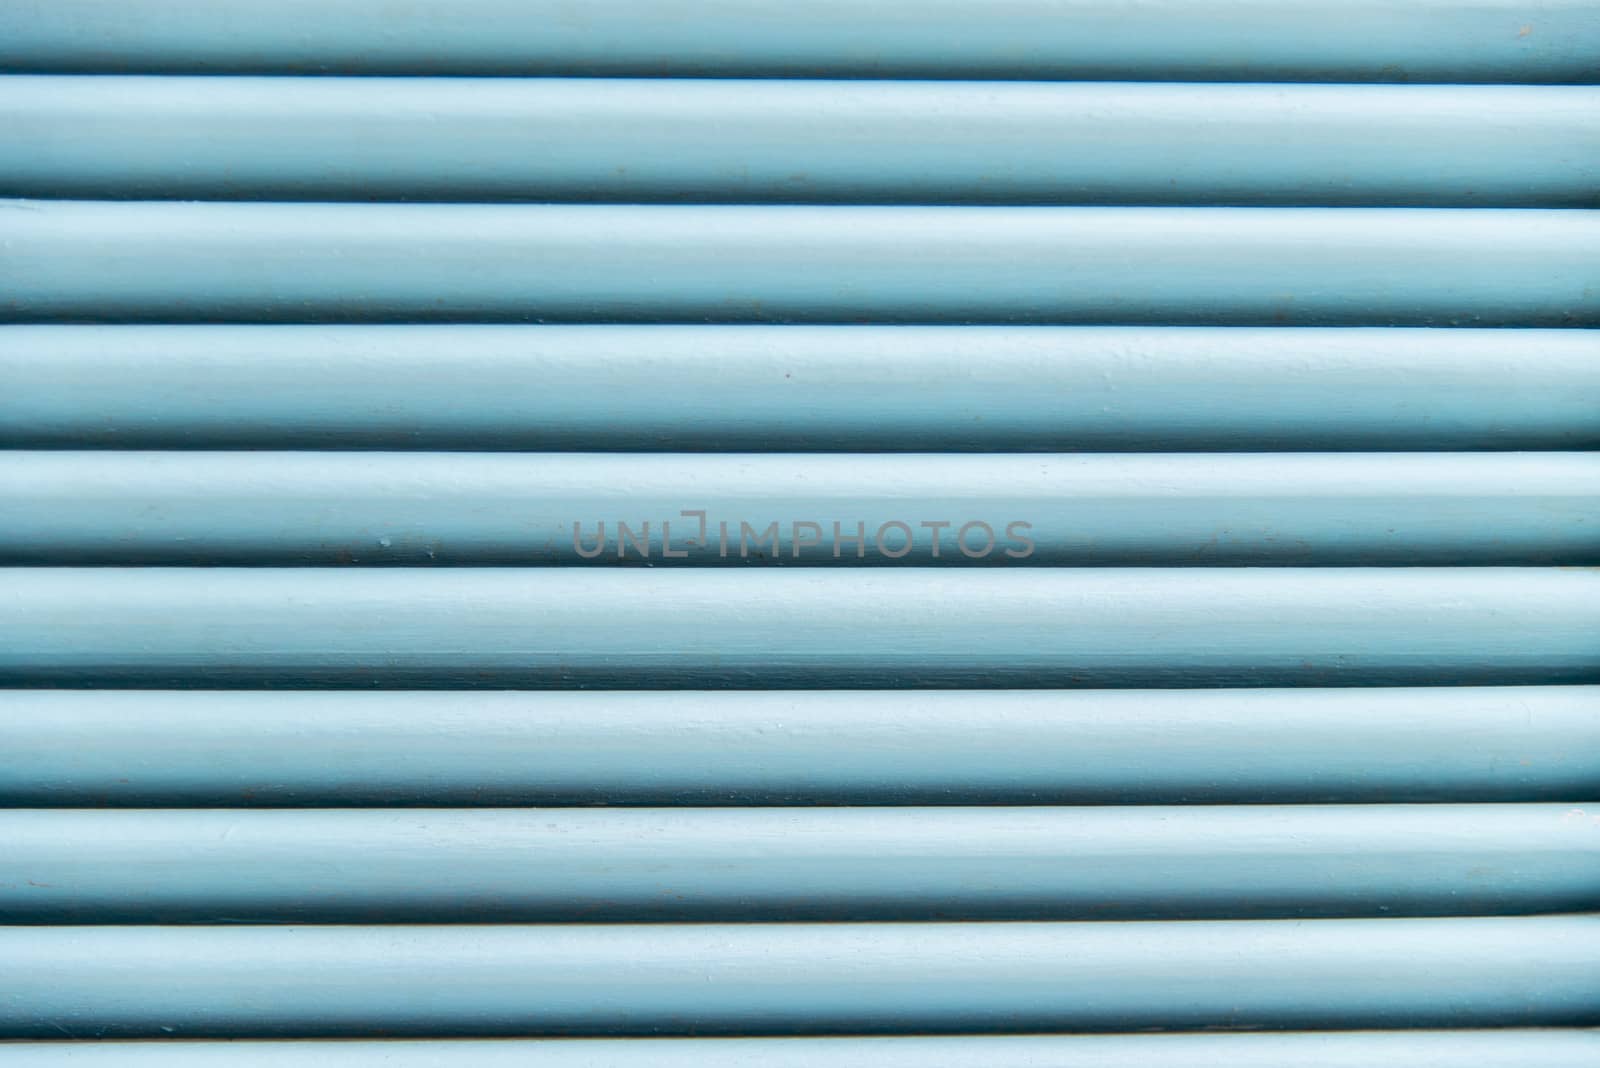 Strips of blue wooden window2 by gjeerawut